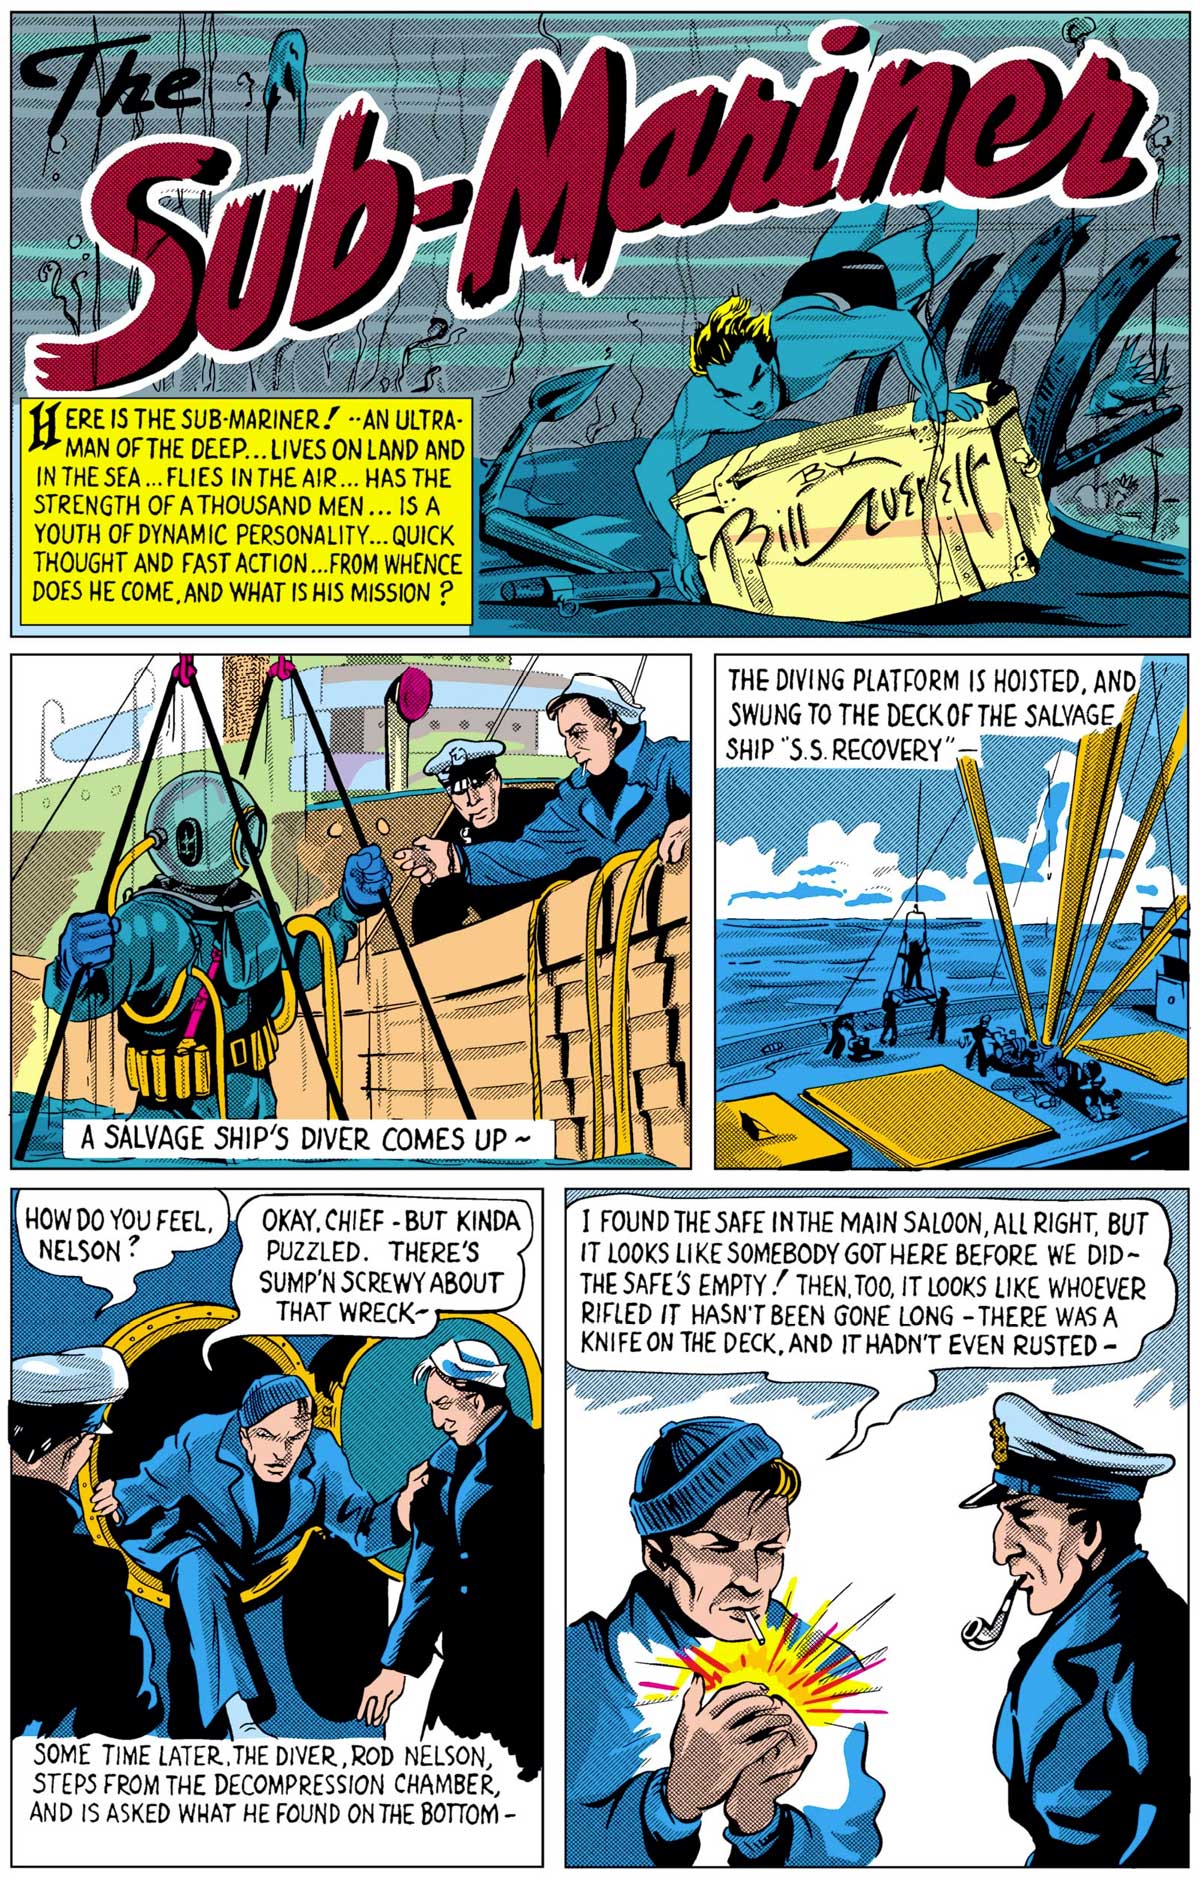 The Sub-Mariner from Marvel Comics #1 (Oct 1939) by Bill Everett